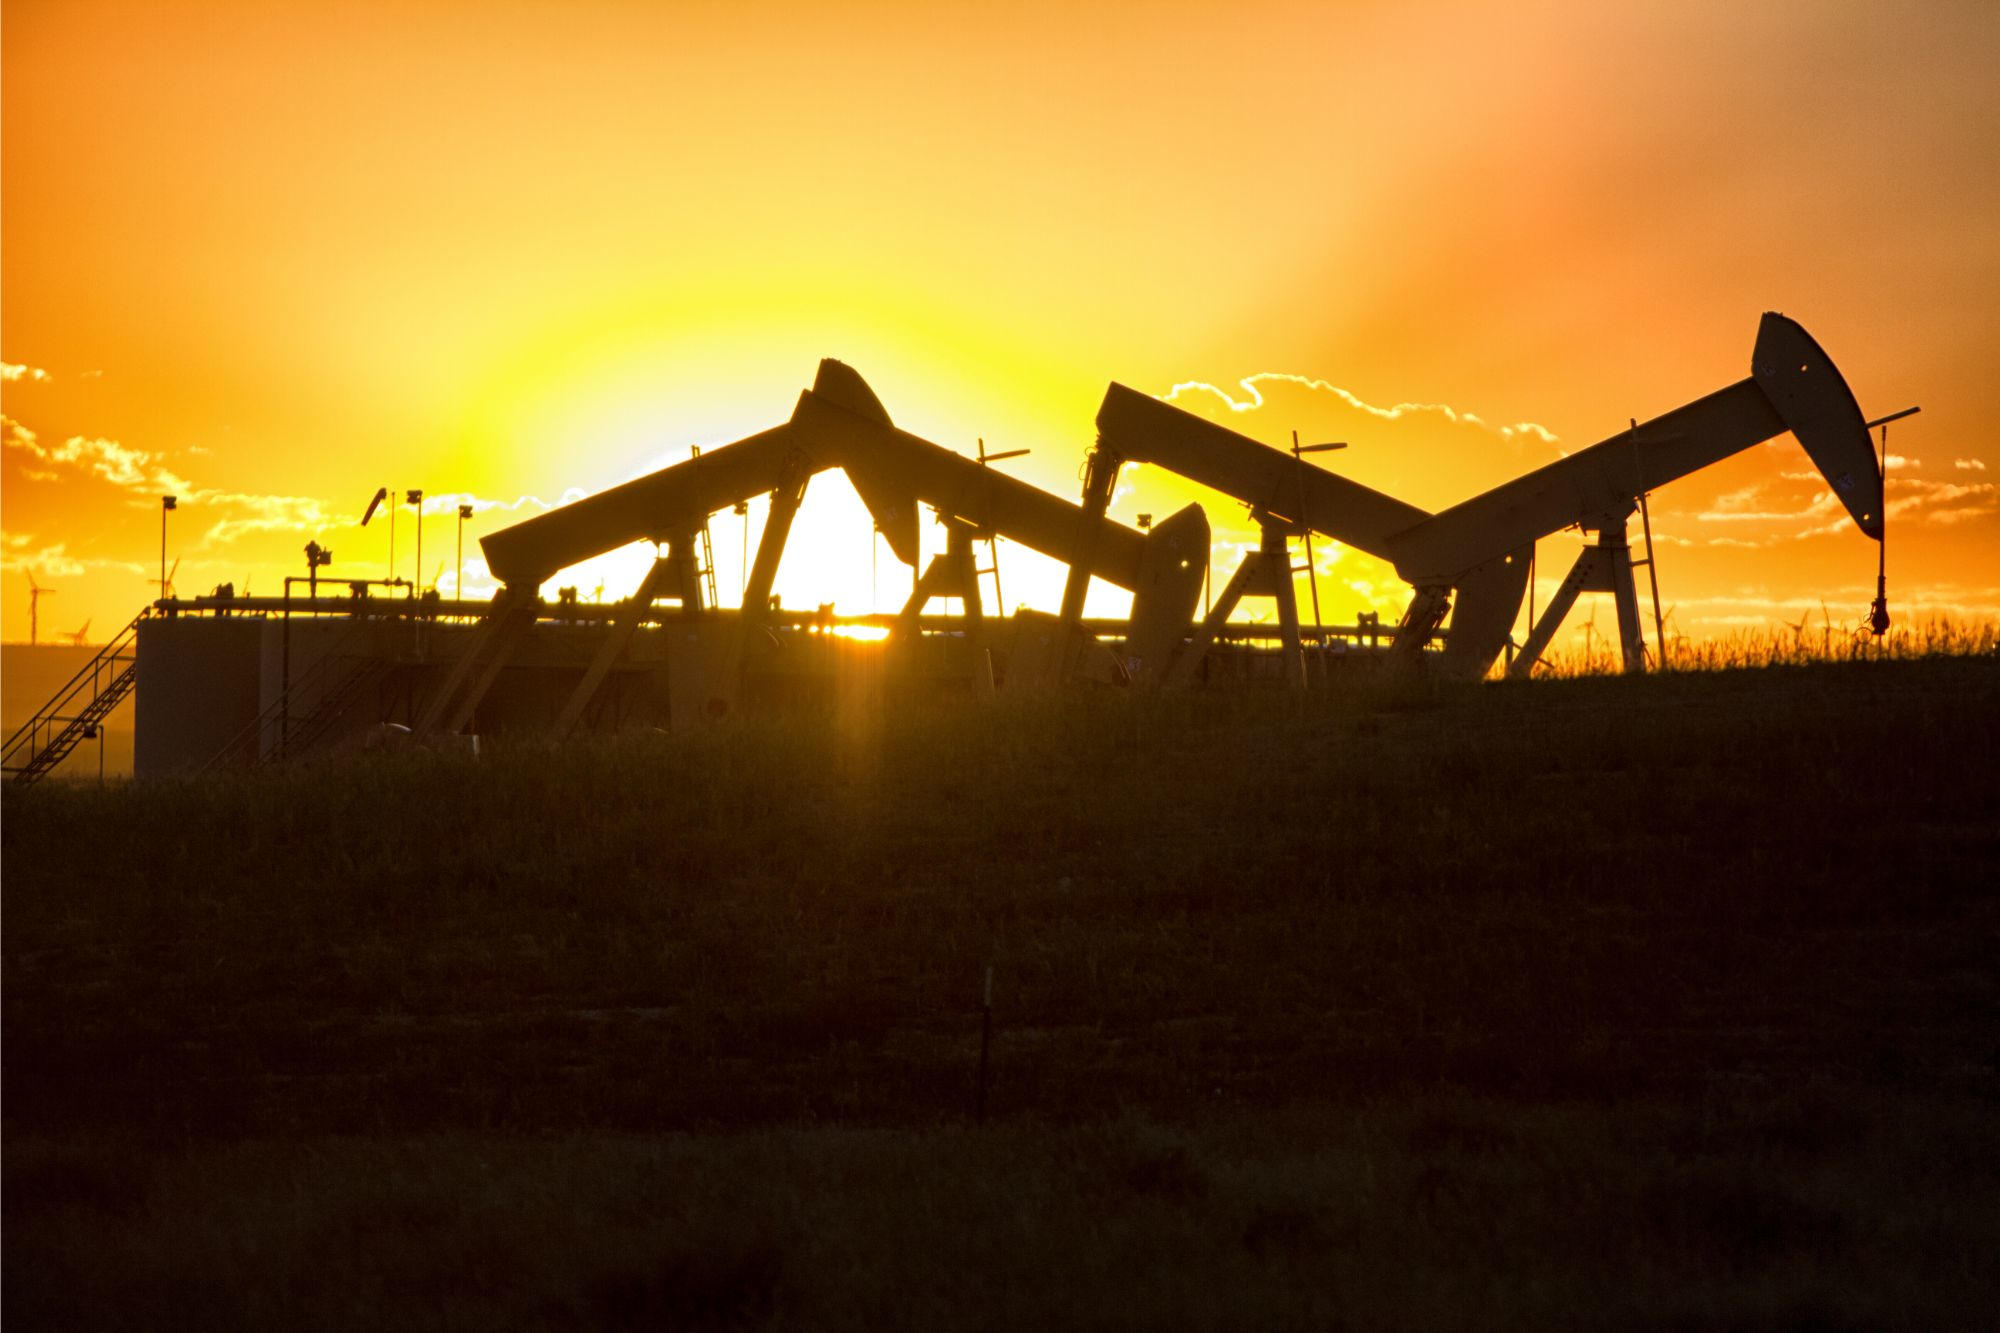 Fraturamento hidráulico Sunset em poço de petróleo